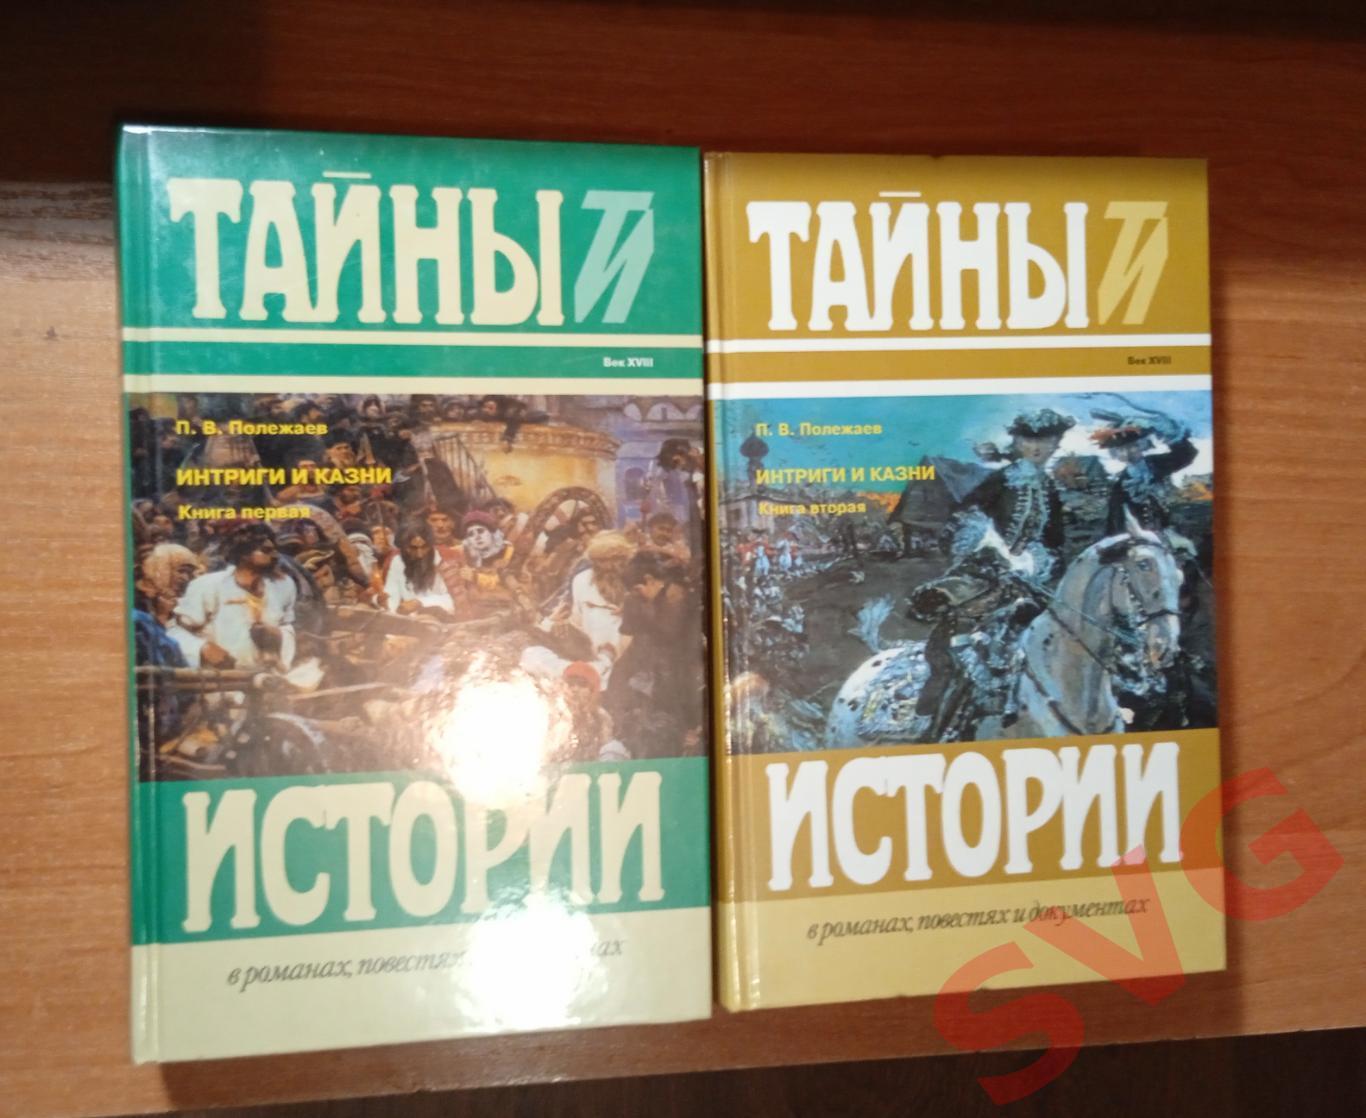 П. В. Полежаев - Интриги и казни (цикл исторических романов в 2-х томах)